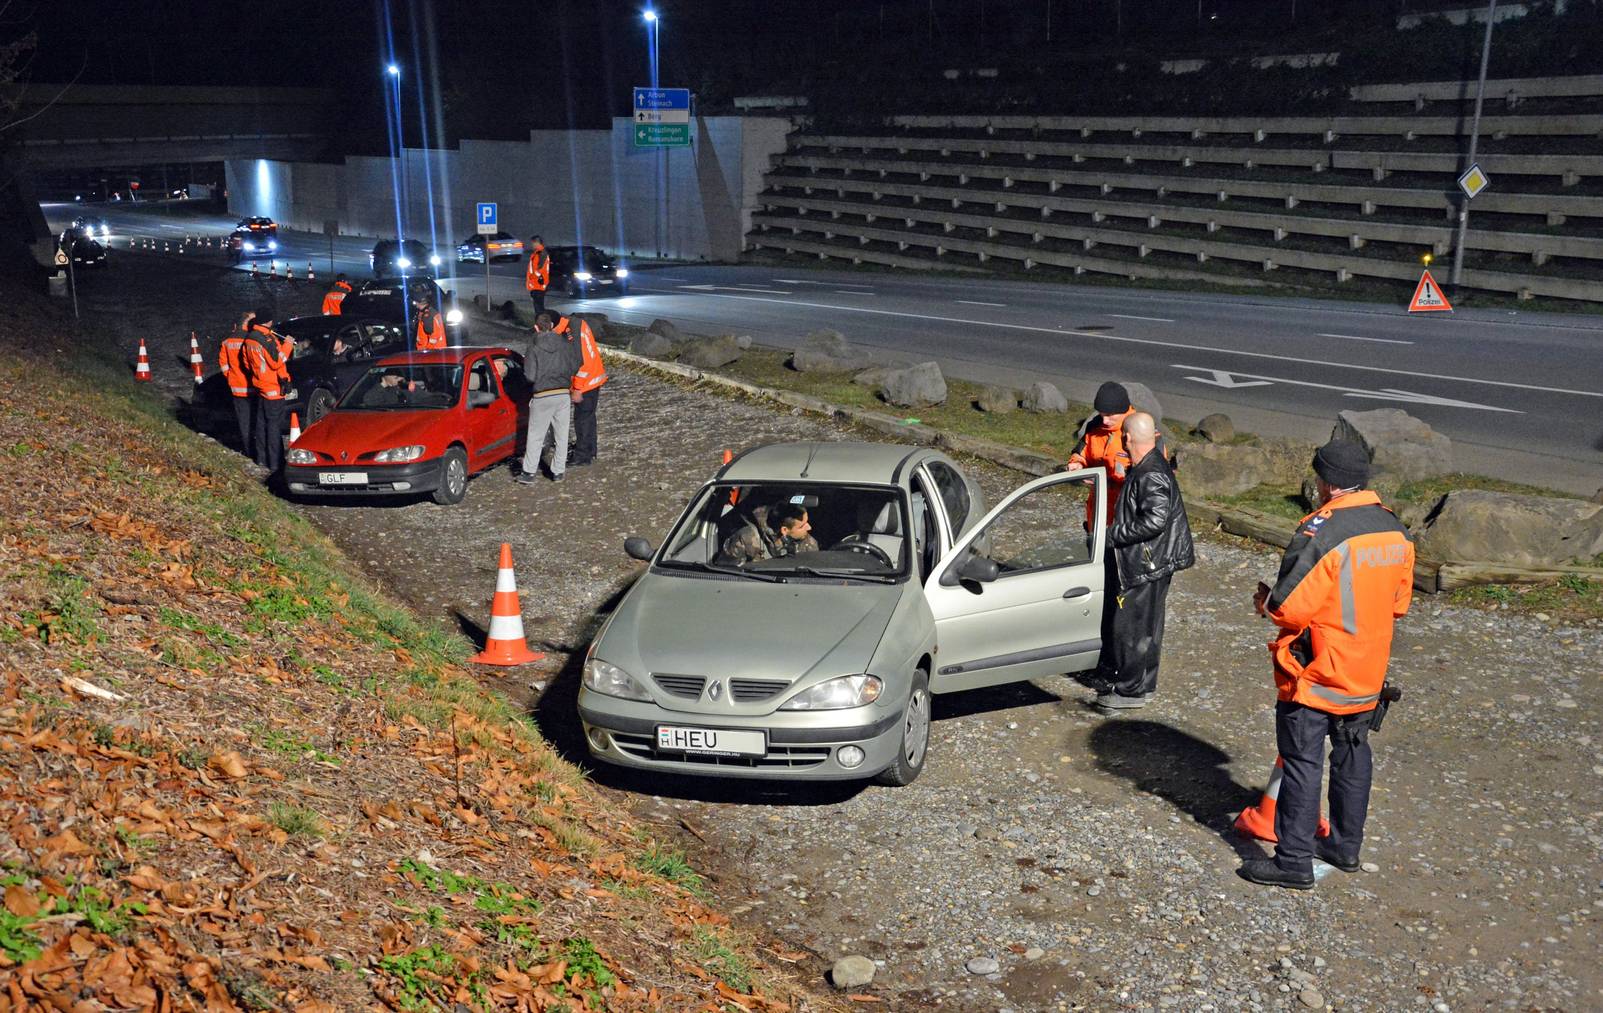 Einsatzkräfte der Kantonspolizei Thurgau kontrollierten auf dem Autobahnzubringer in Arbon während mehreren Stunden Fahrzeuge und Personen. (Bilder: KapoTG)